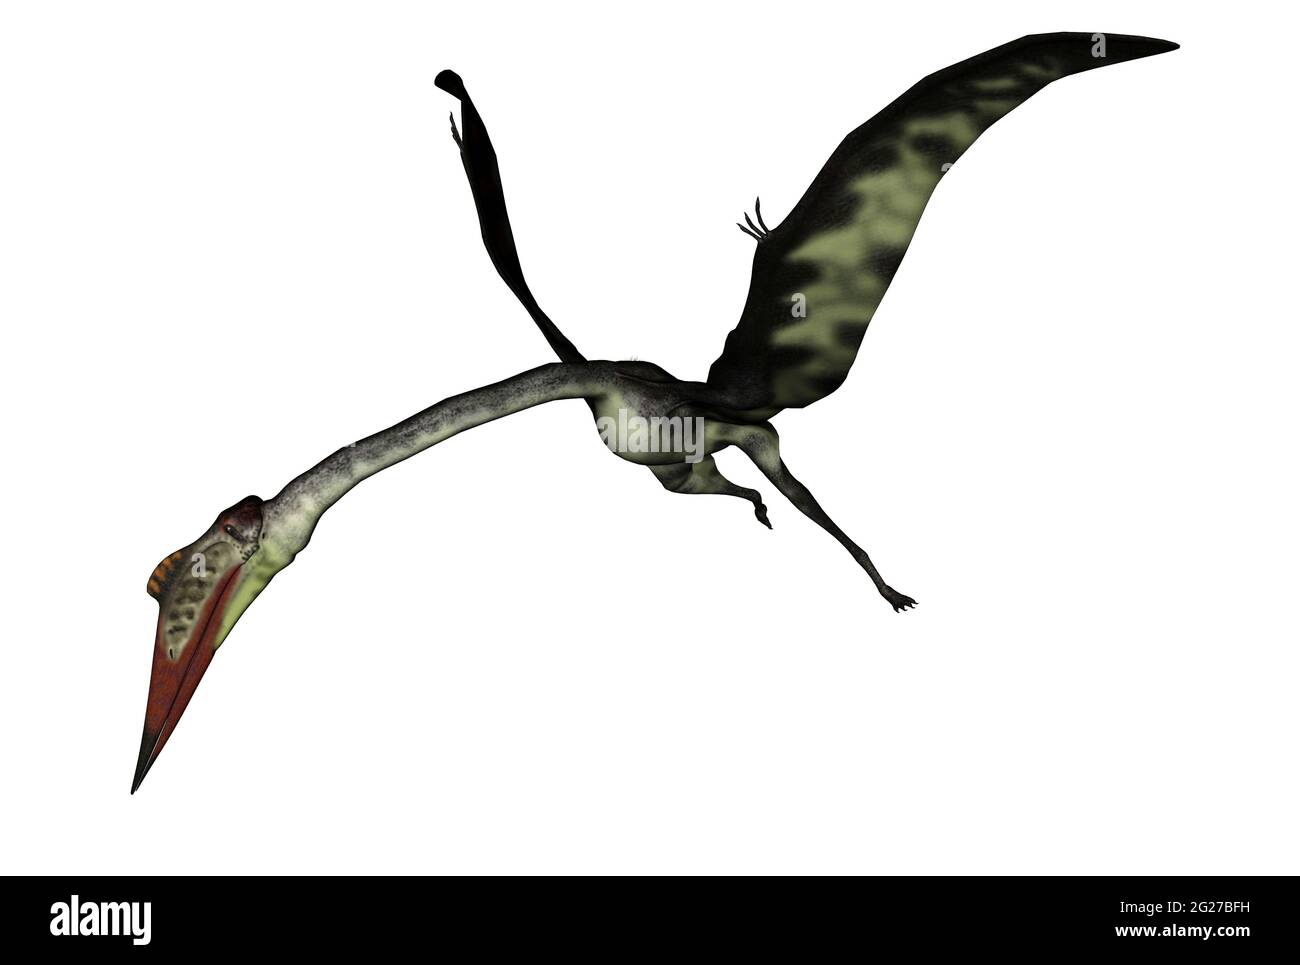 Pteranodon Pterodactyl Dinosaur on White Background Stock Photo - Image of  background, gigantic: 139129966